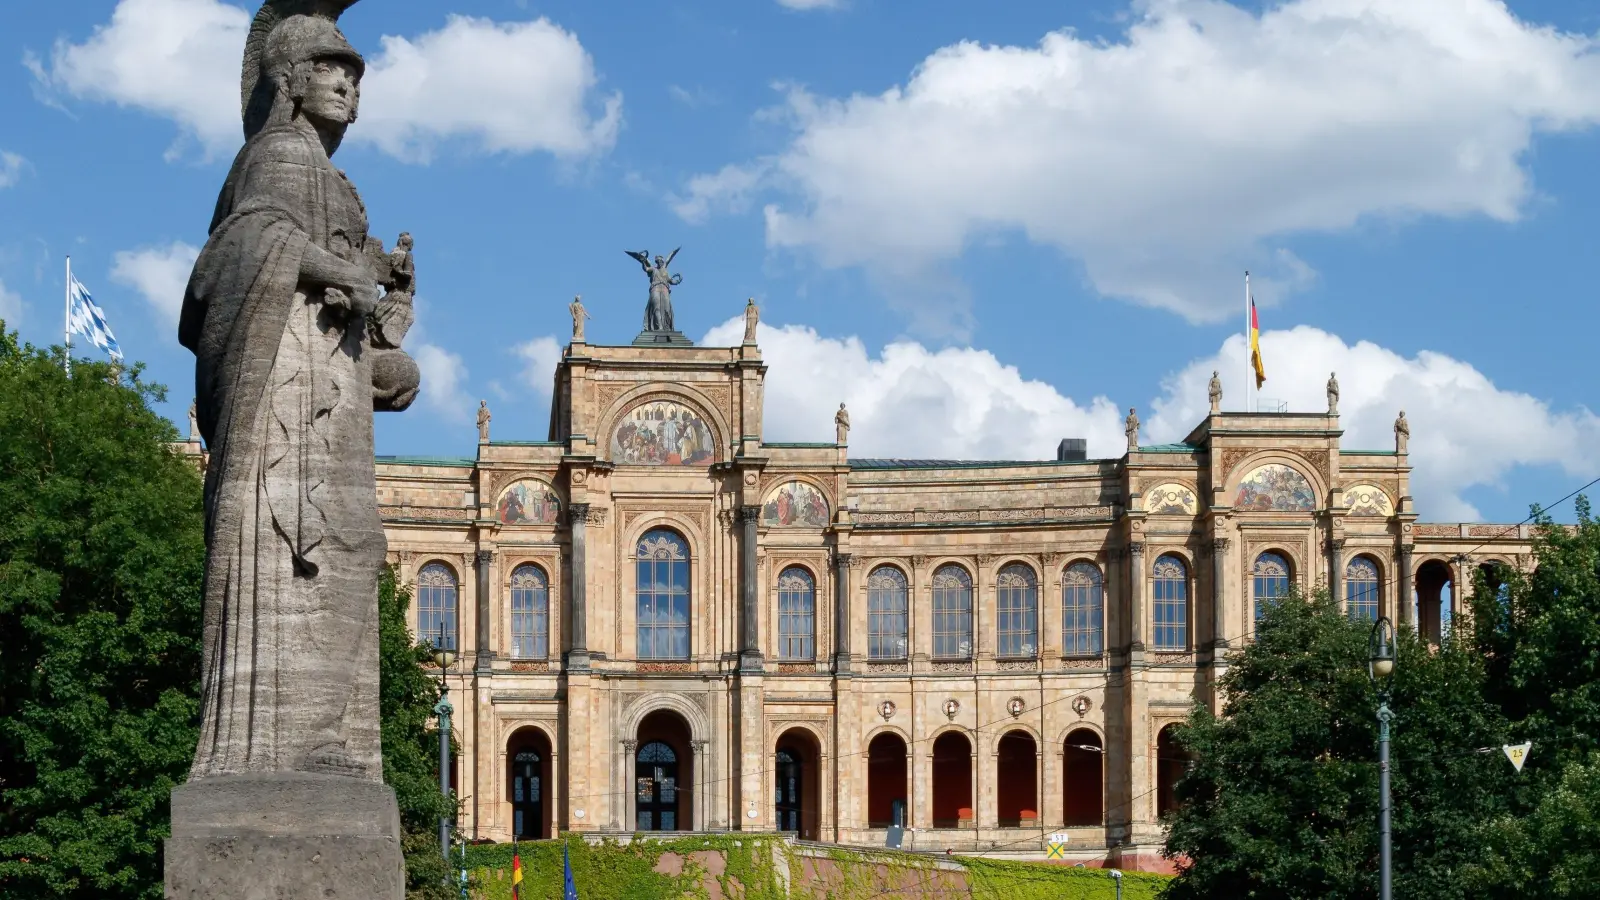 Am 8. Oktober entscheidet sich, wer im Maximilianeum künftig als Abgeordneter vertreten ist. Der eindrucksvolle Bau in München wurde 1874 fertig gestellt.  (Foto: Pixabay)